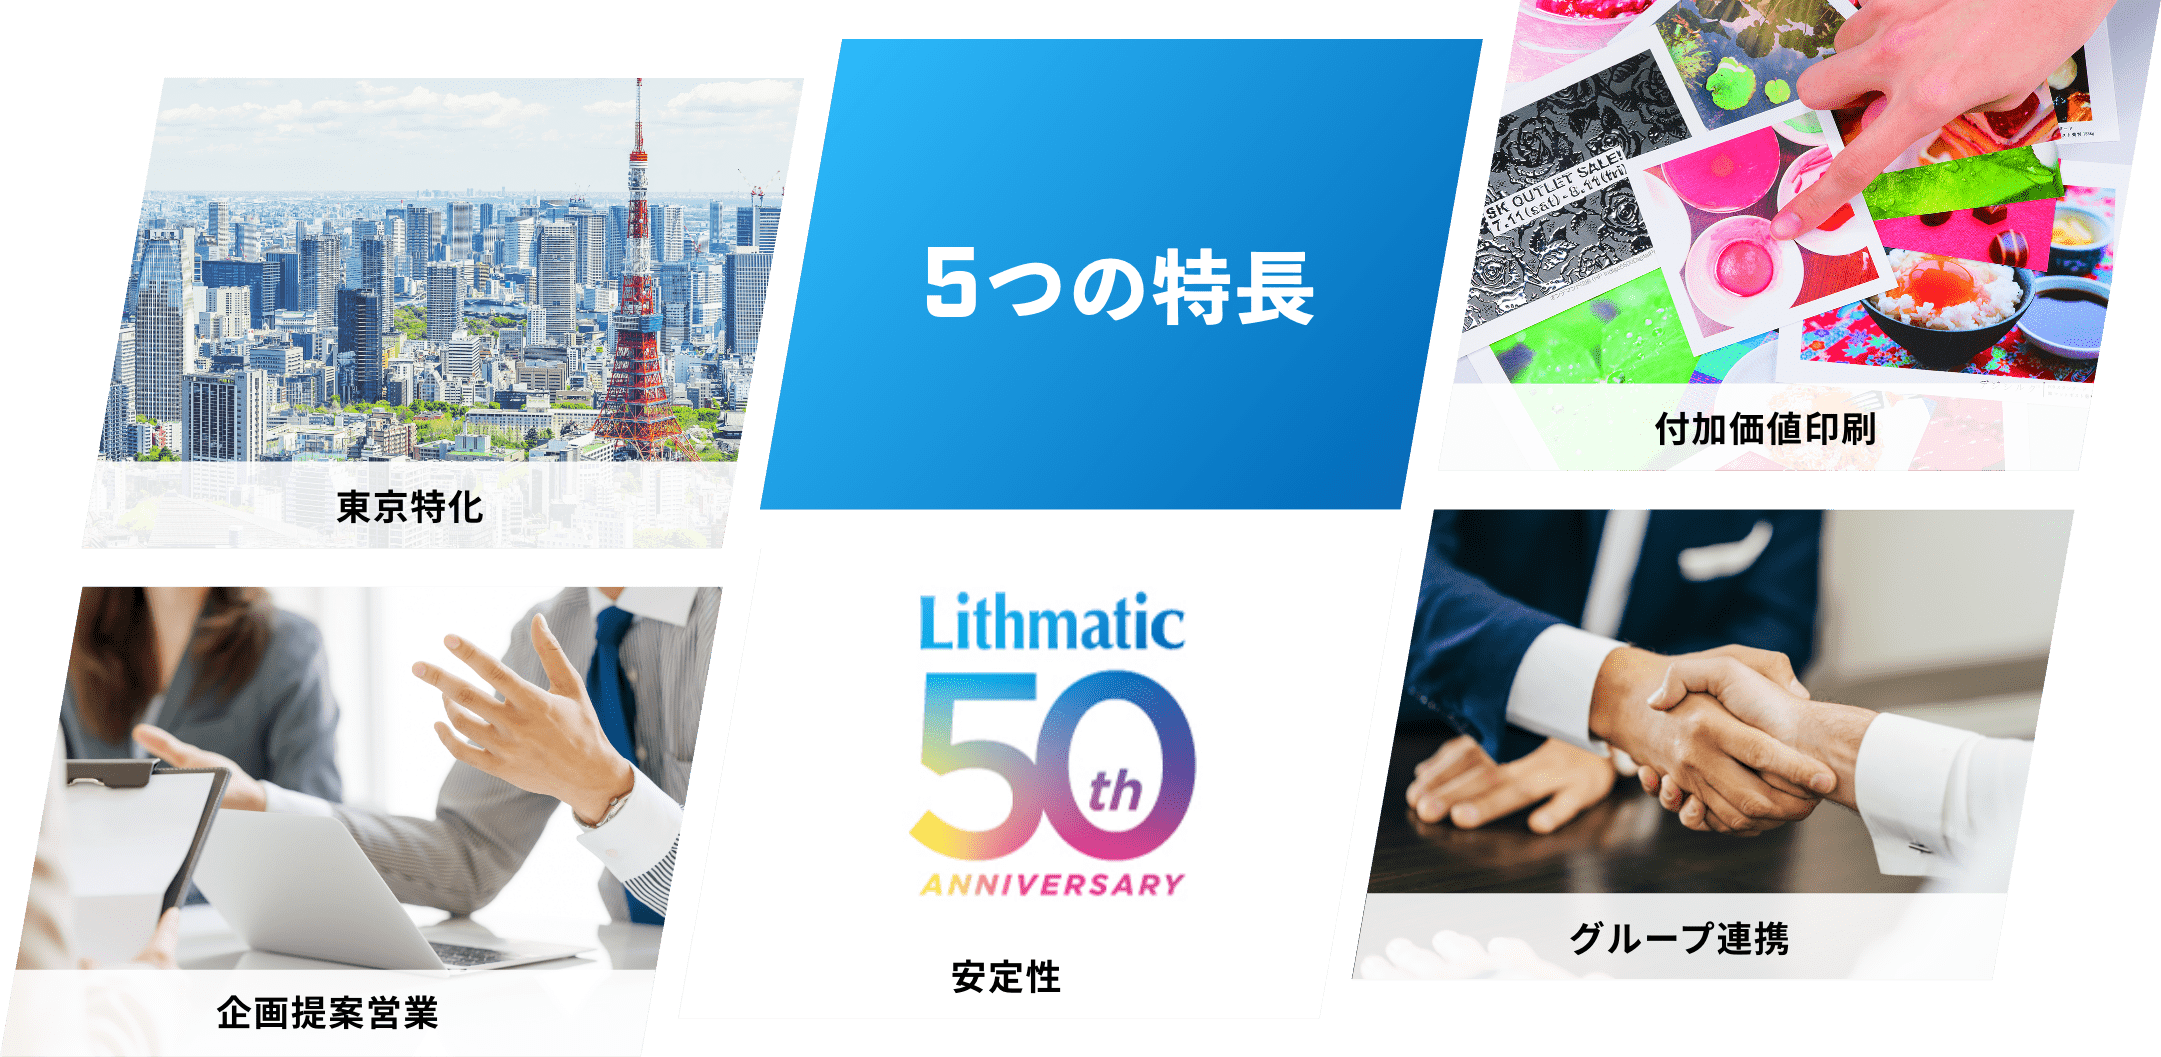 4つの特徴 東京特化・企画提案営業・付加価値印刷・グループ連携